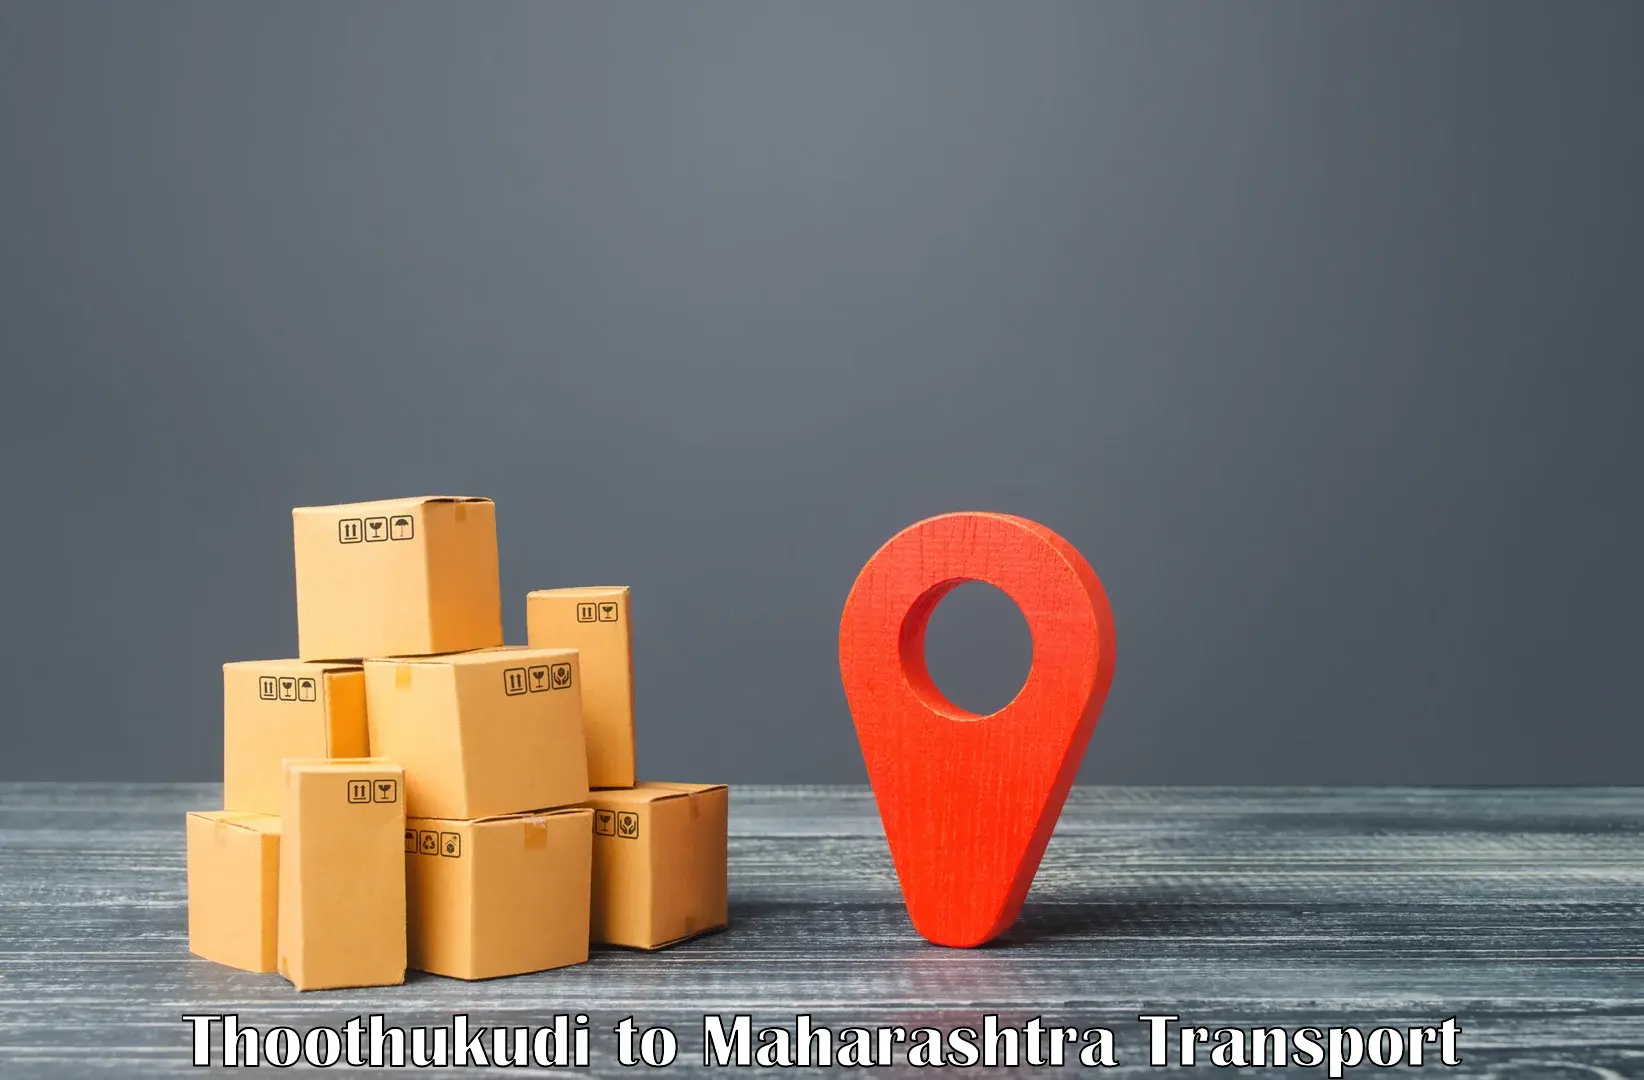 Furniture transport service in Thoothukudi to IIT Mumbai